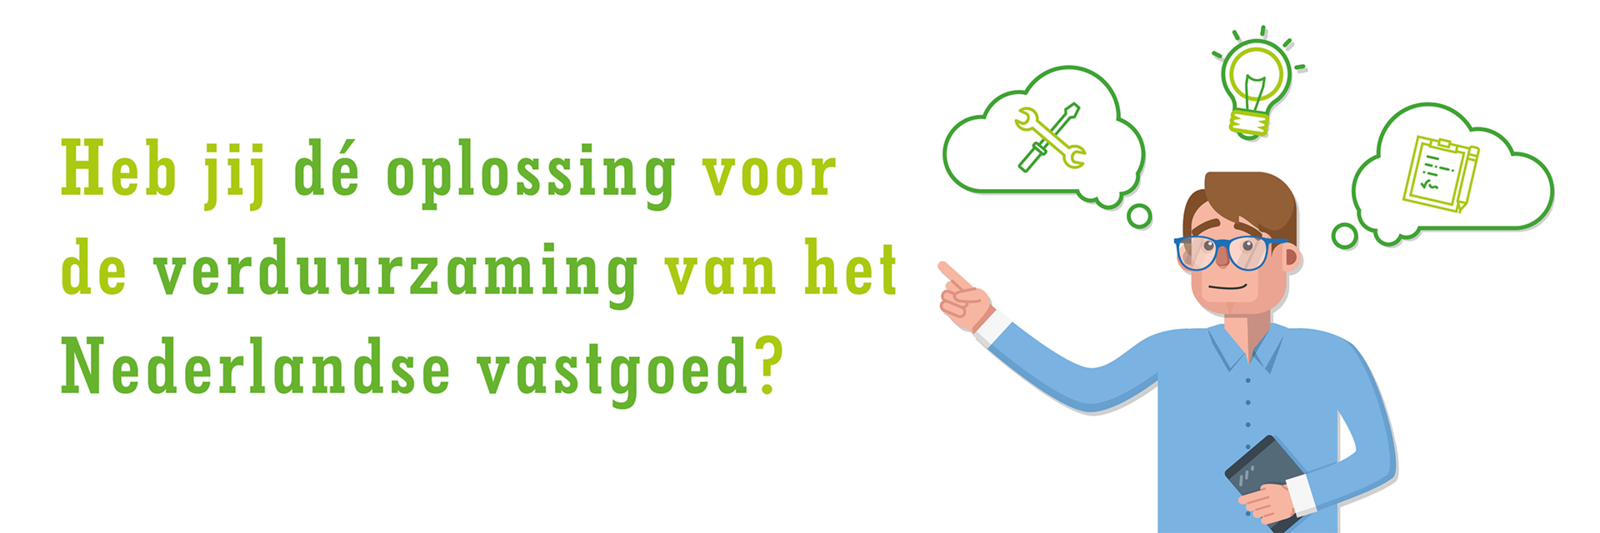 Heb jij dé oplossing voor de verduurzaming van het Nederlandse vastgoed?